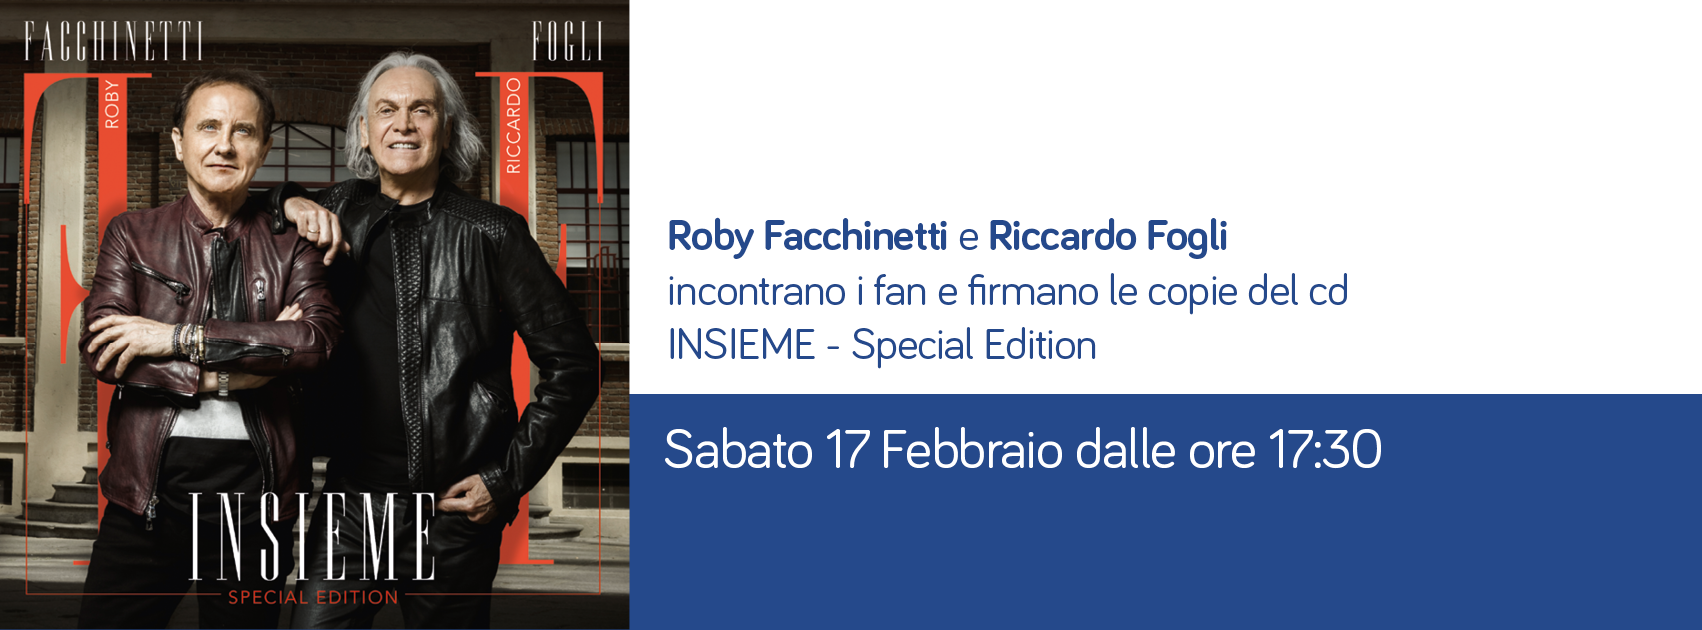 Roby Facchinetti e Riccardo Fogli incontrano i fan